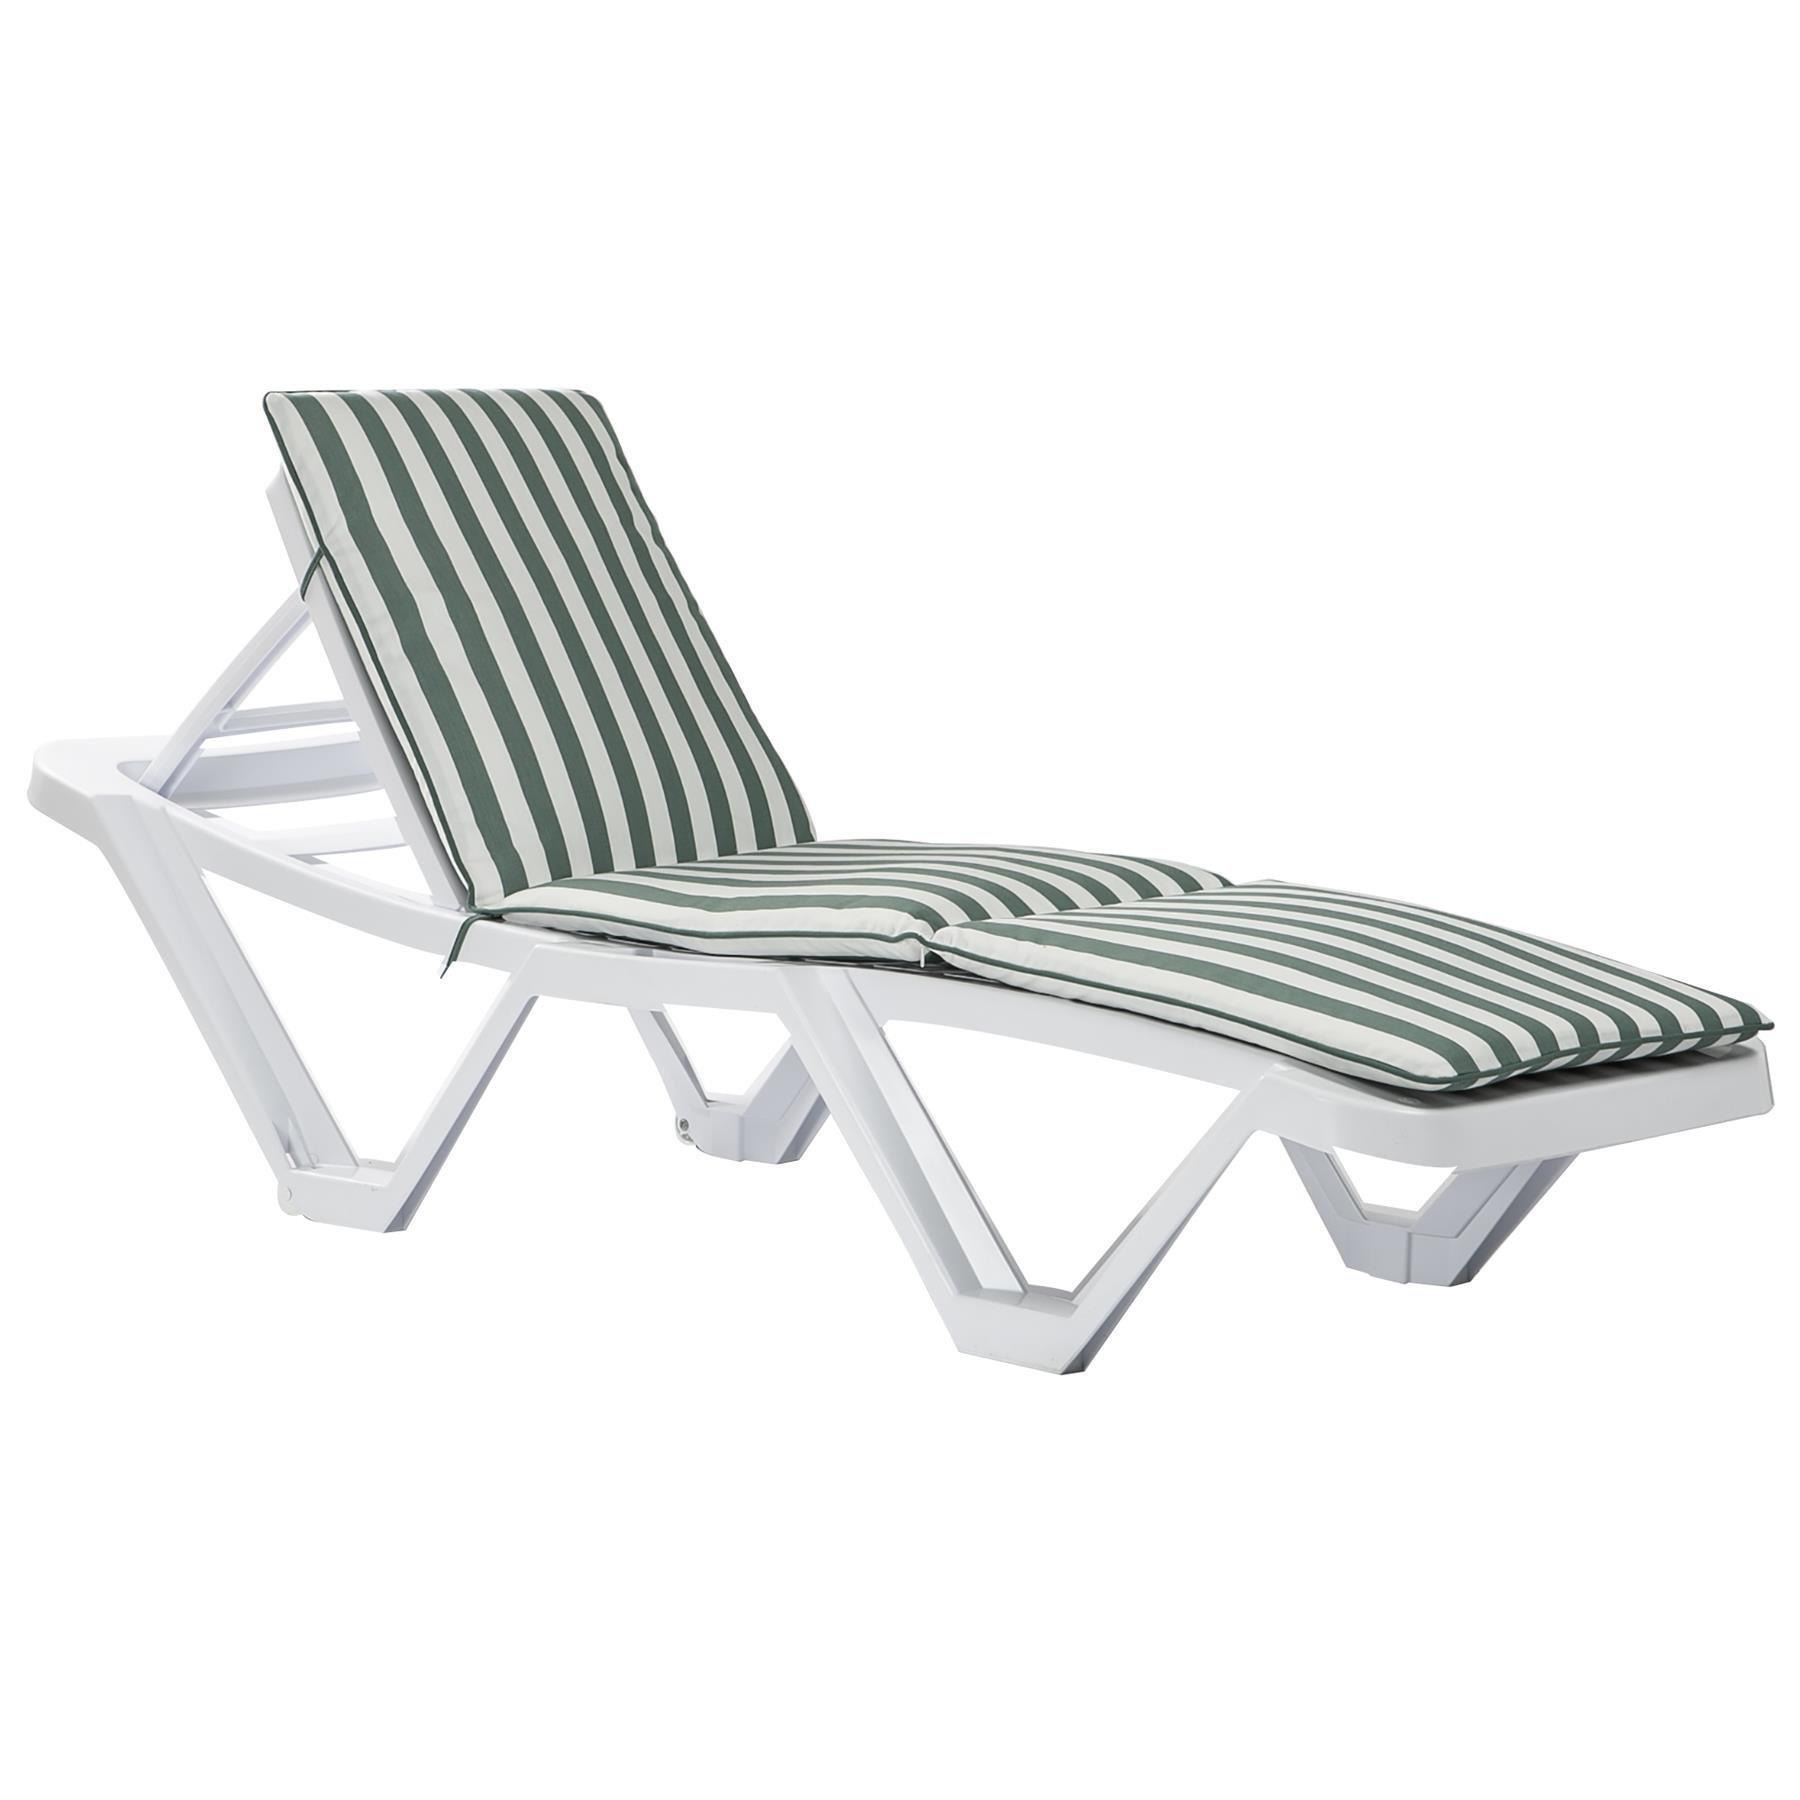 Master Sun Lounger & Cushion Set White/Green Stripe - image 1